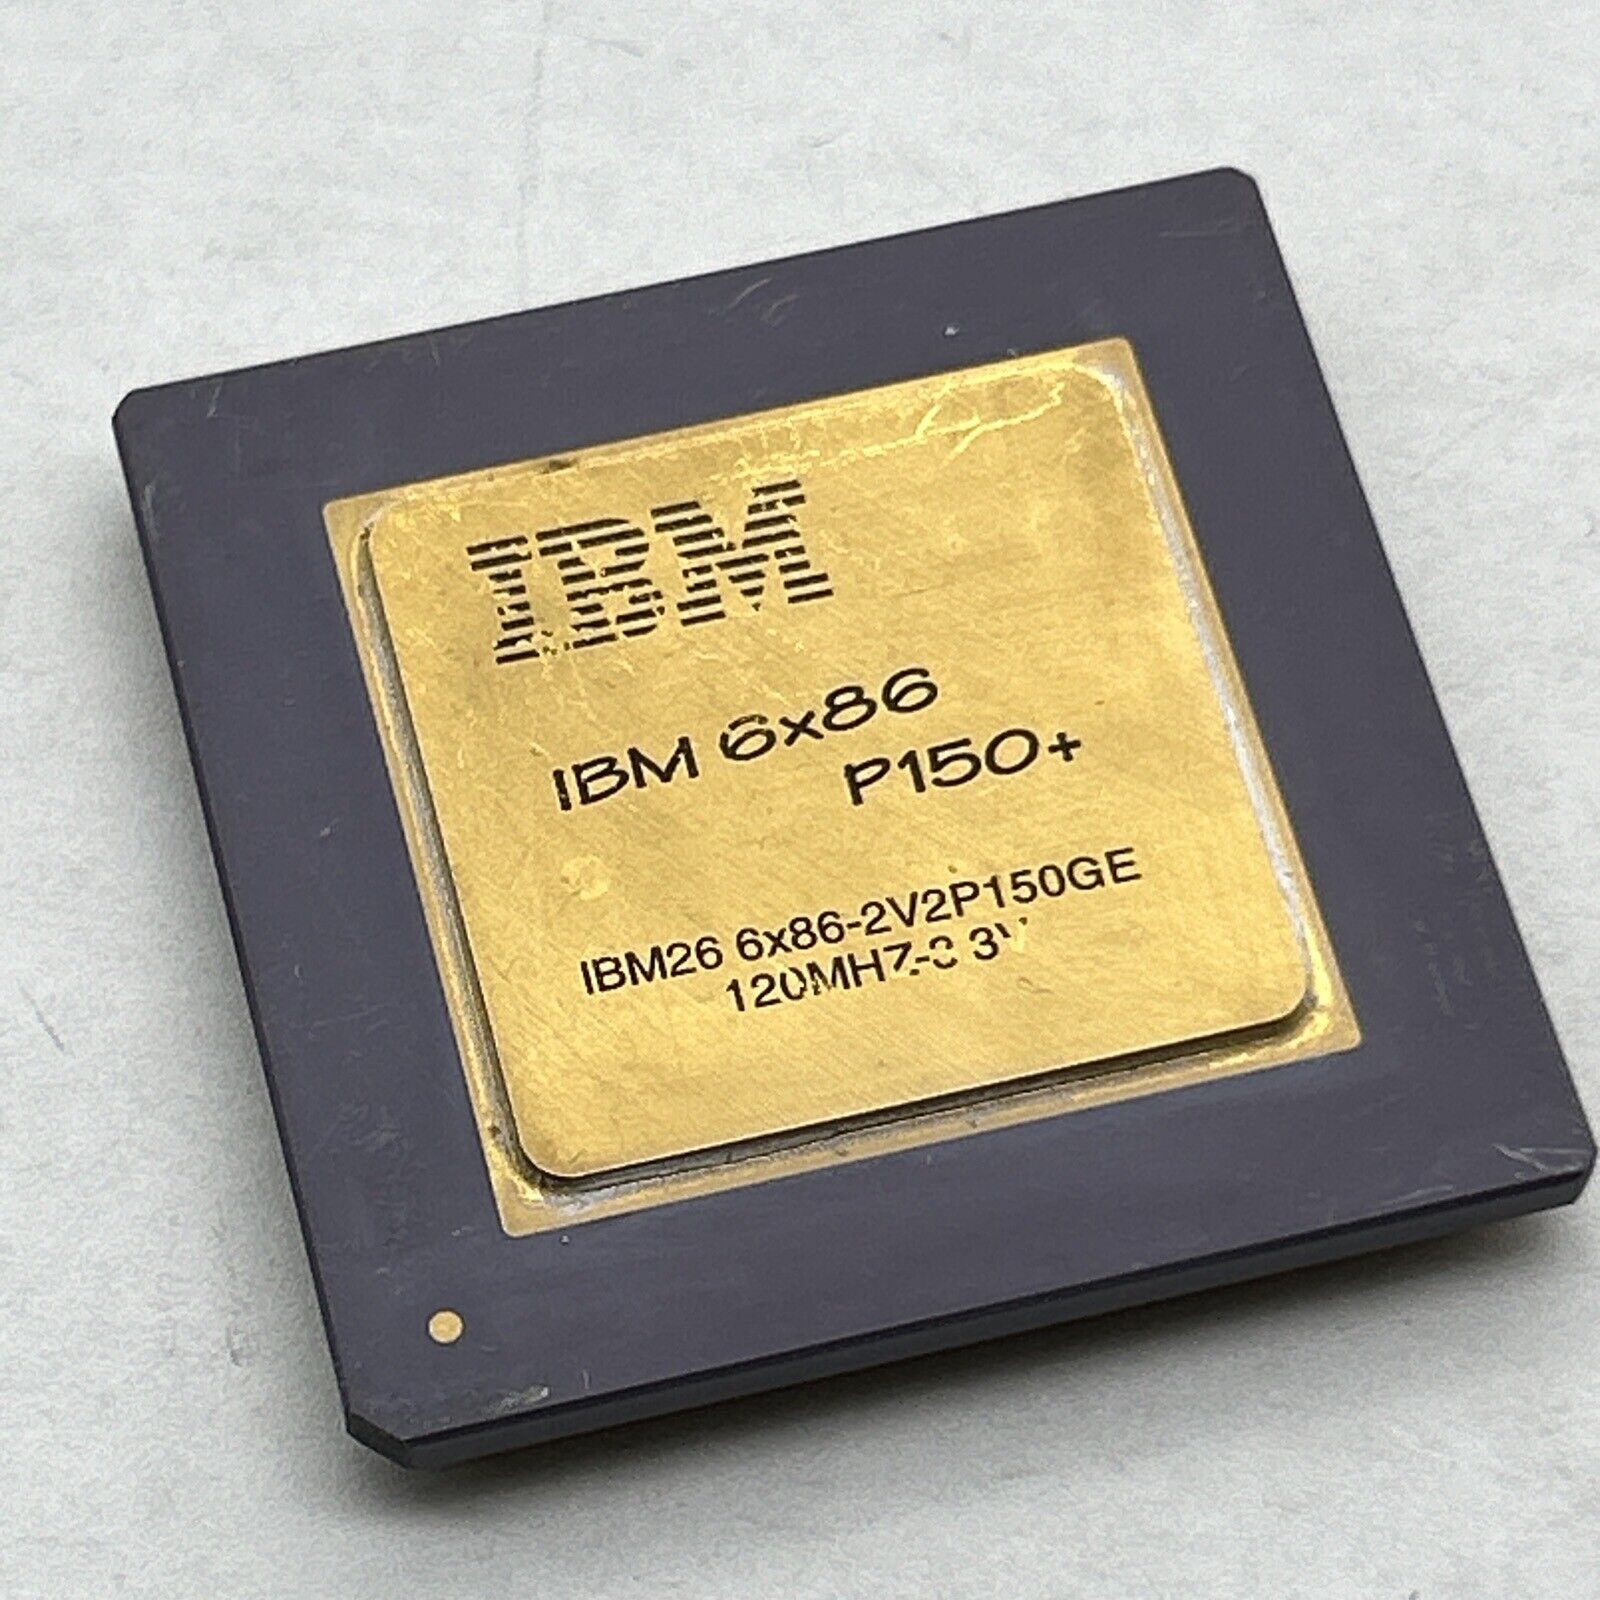 IBM 6x86 P150+ 2V2P150GE 120mhz 3.3v 88H1548 Cyrix Vintage Rare  GOLD Processor